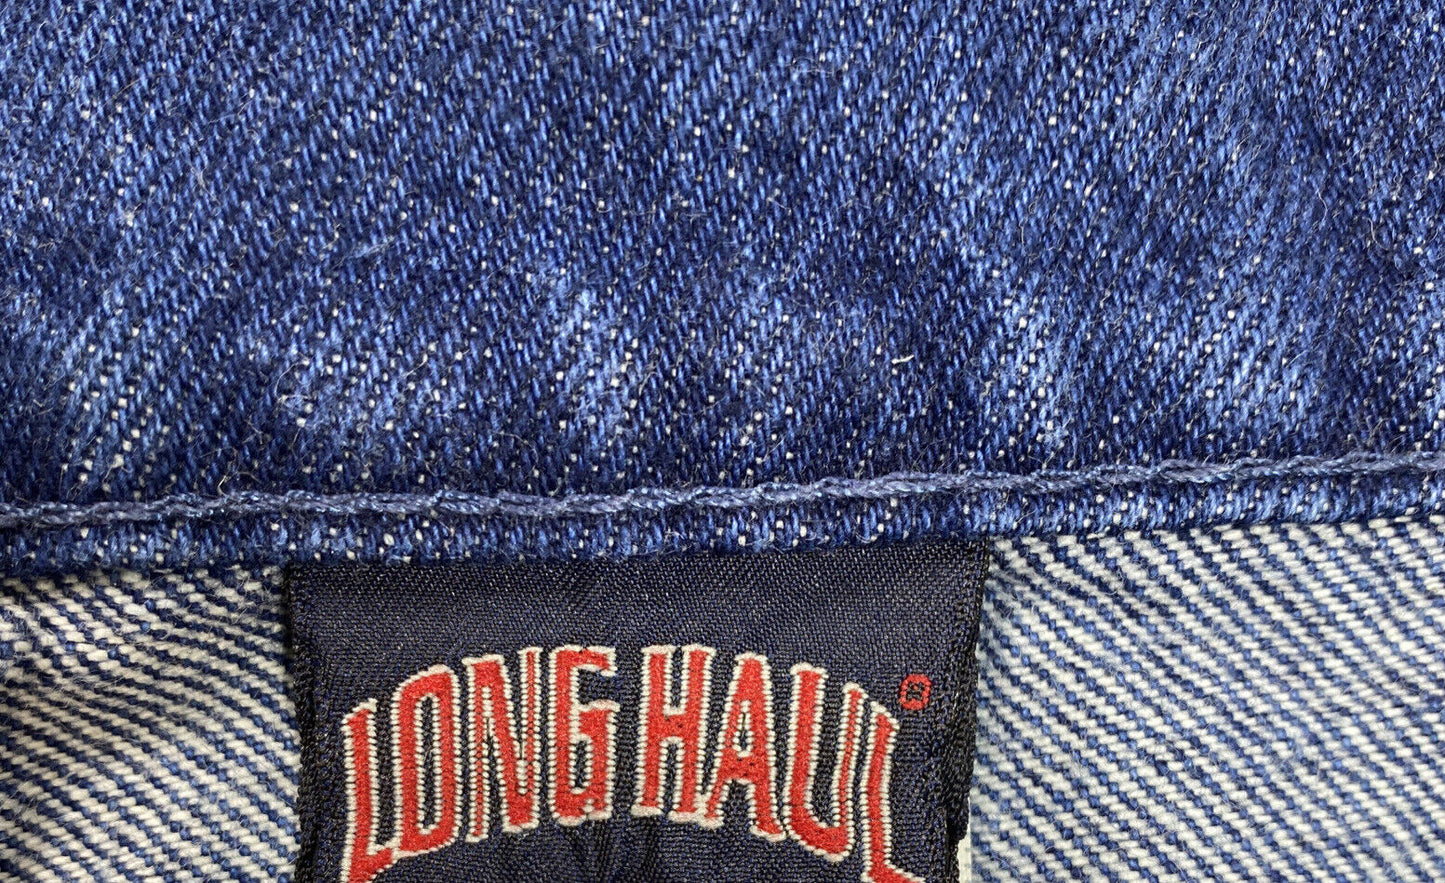 Long Haul Men's Medium Wash Denim Shorts - 42